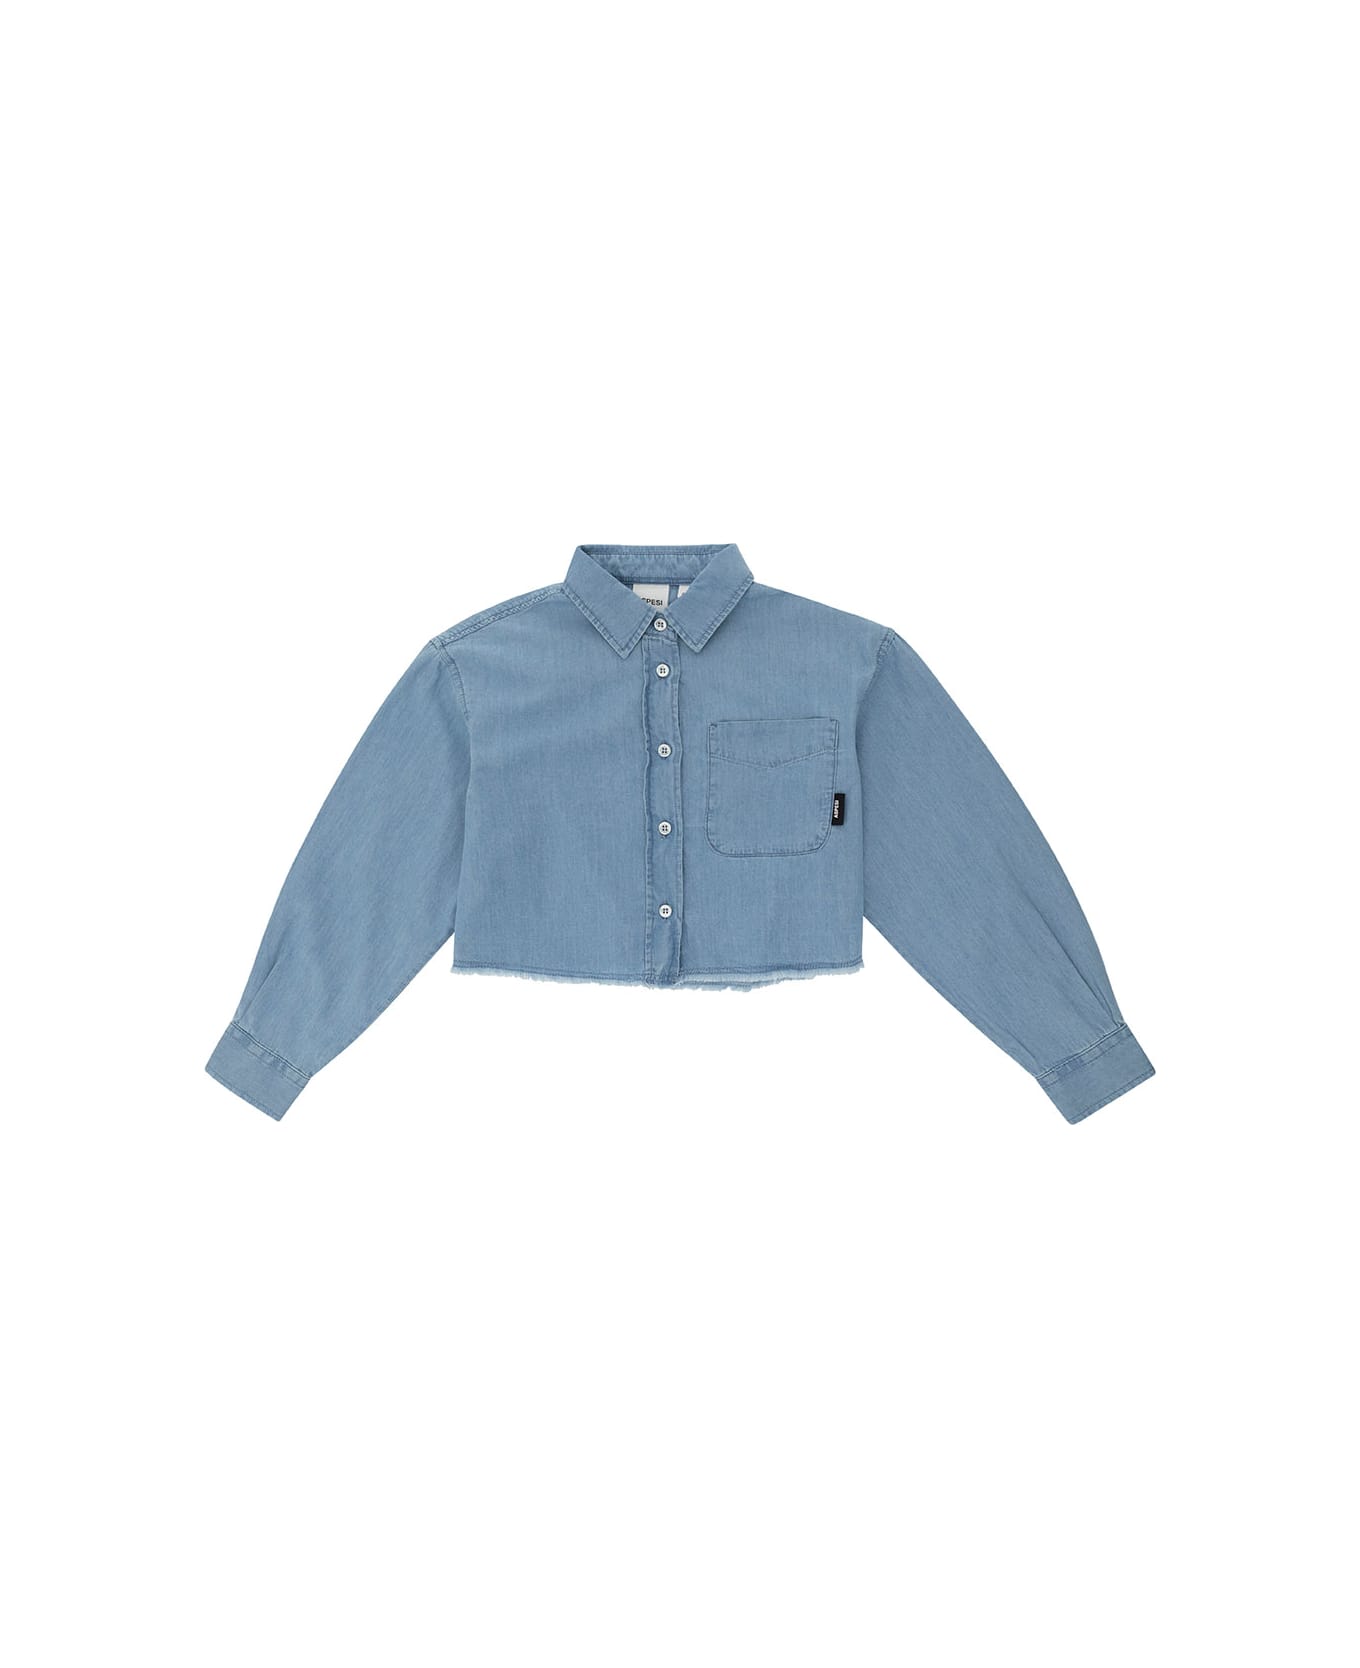 Aspesi Light Blue Crop Shirt With Logo Patch In Cotton Girl - Light blue